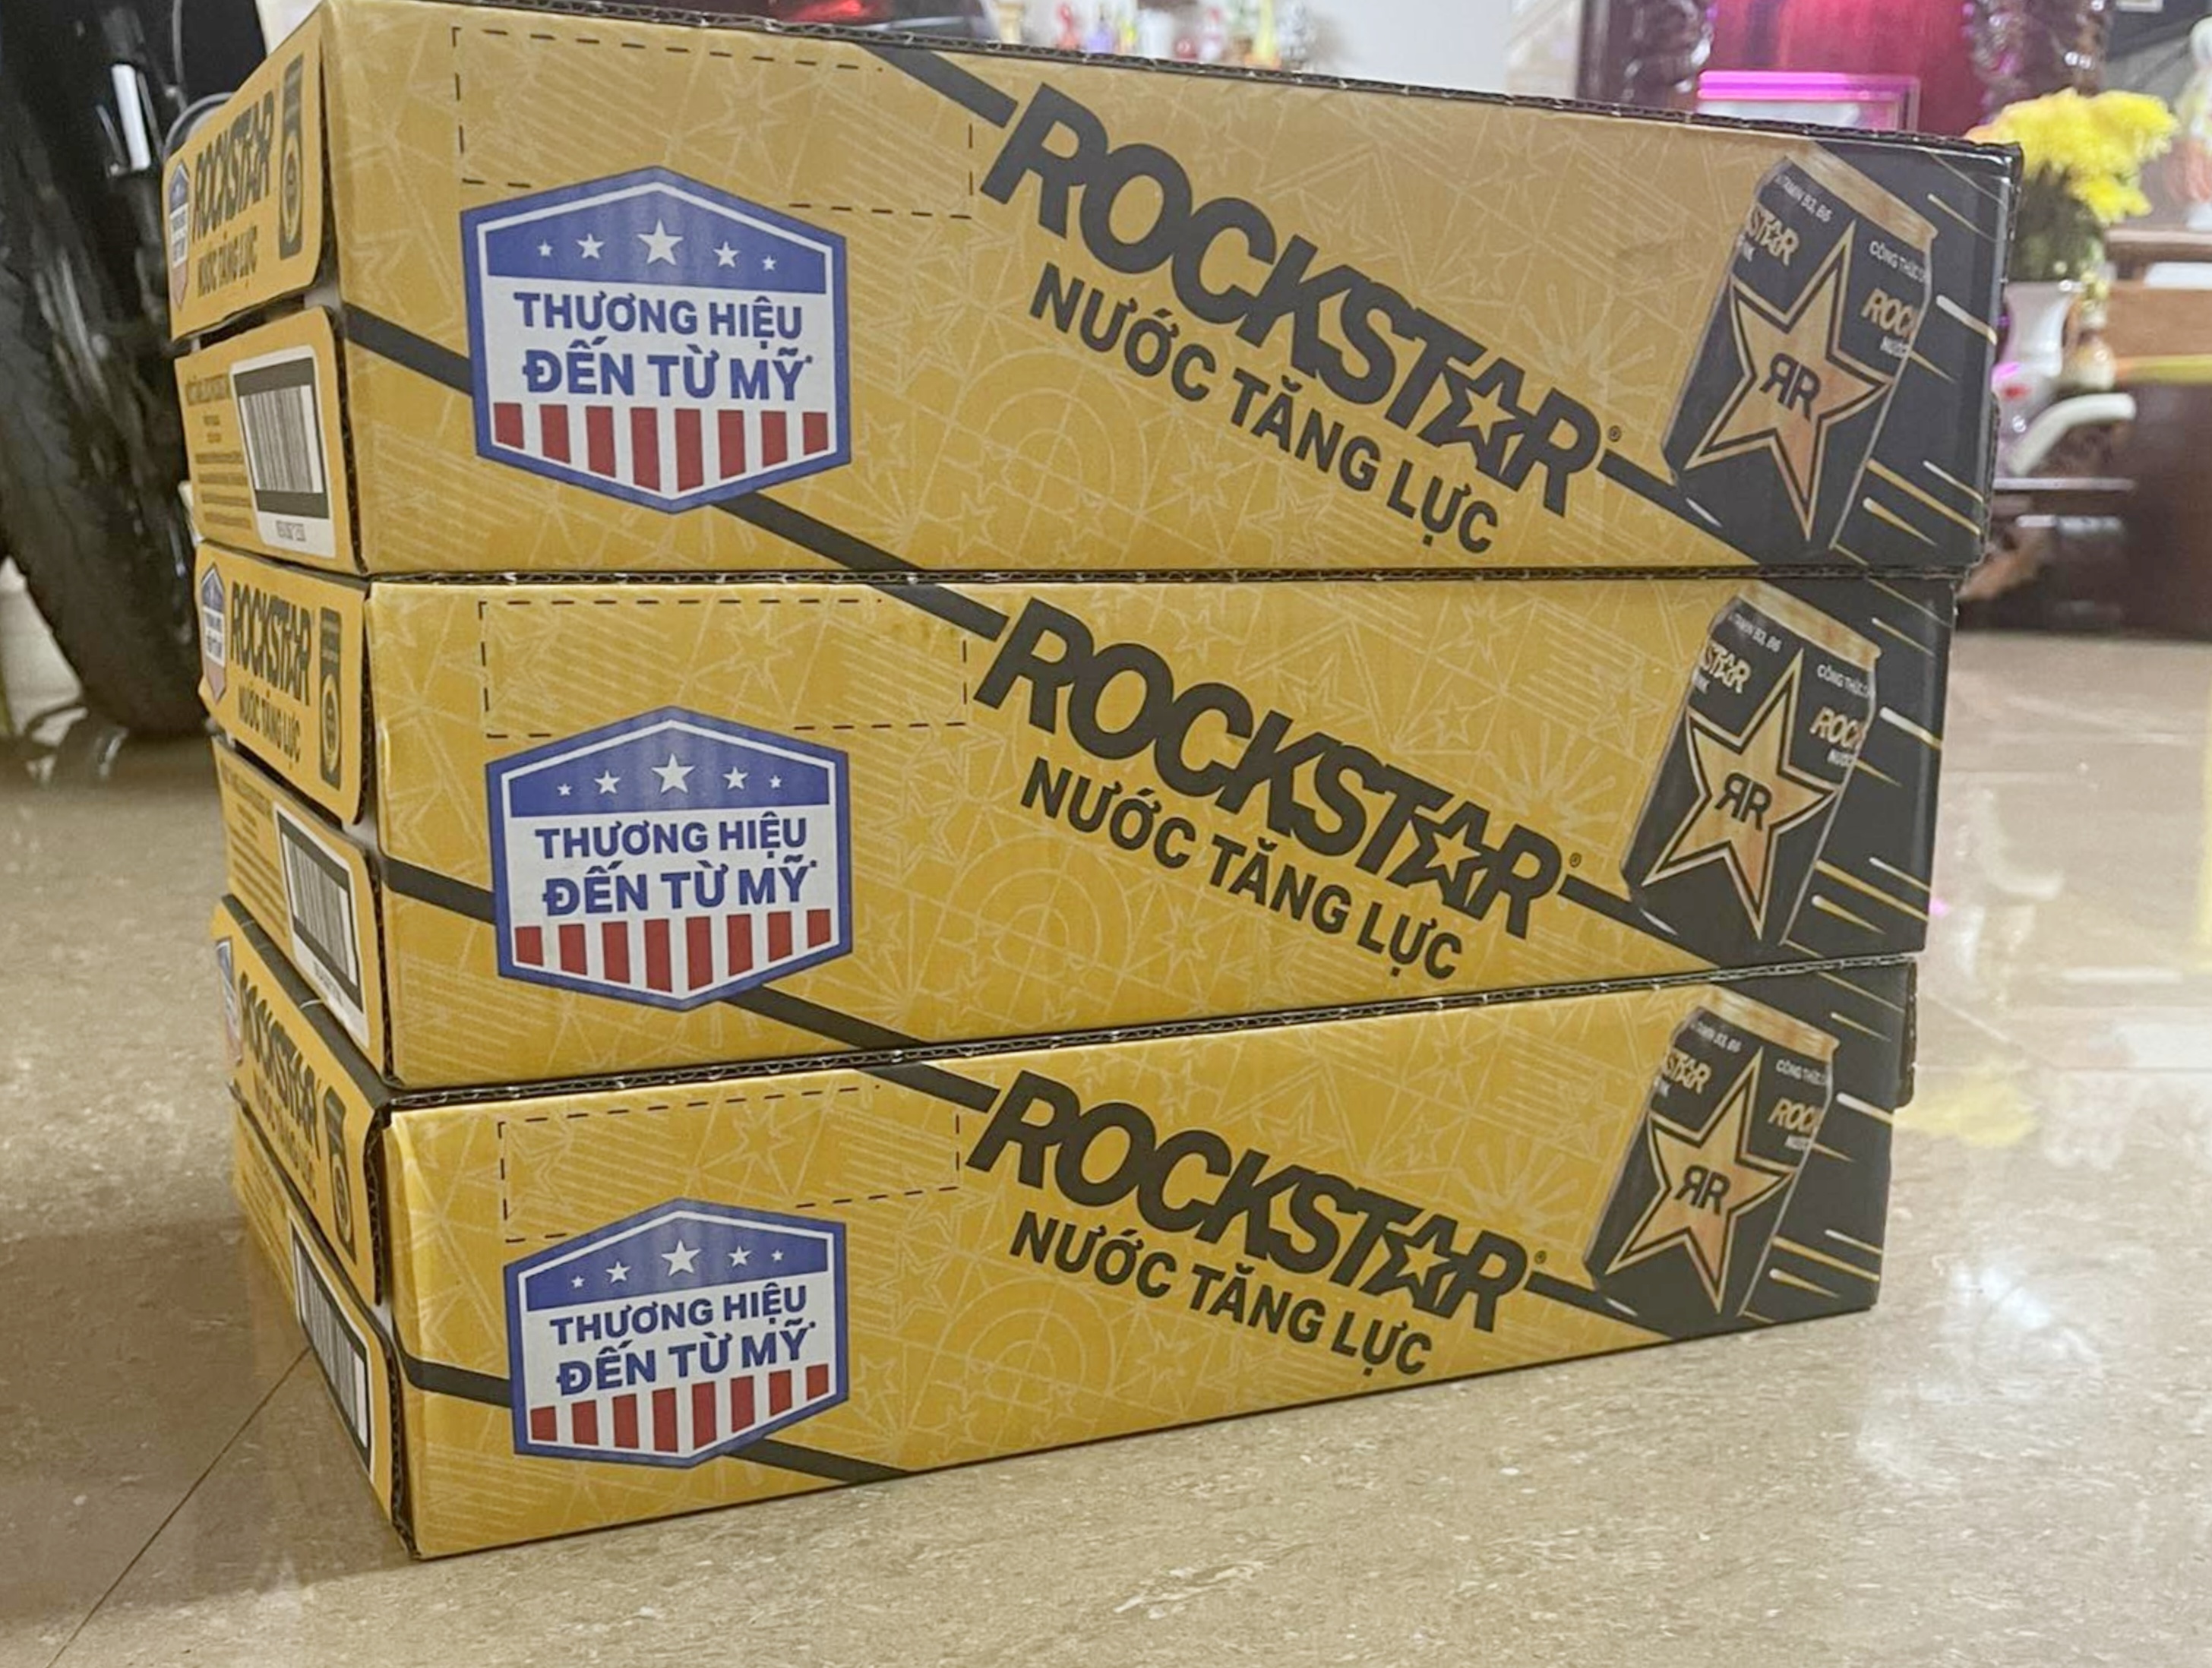 Rockstar Nước tăng lực Rockstar 5 thùng 120lon